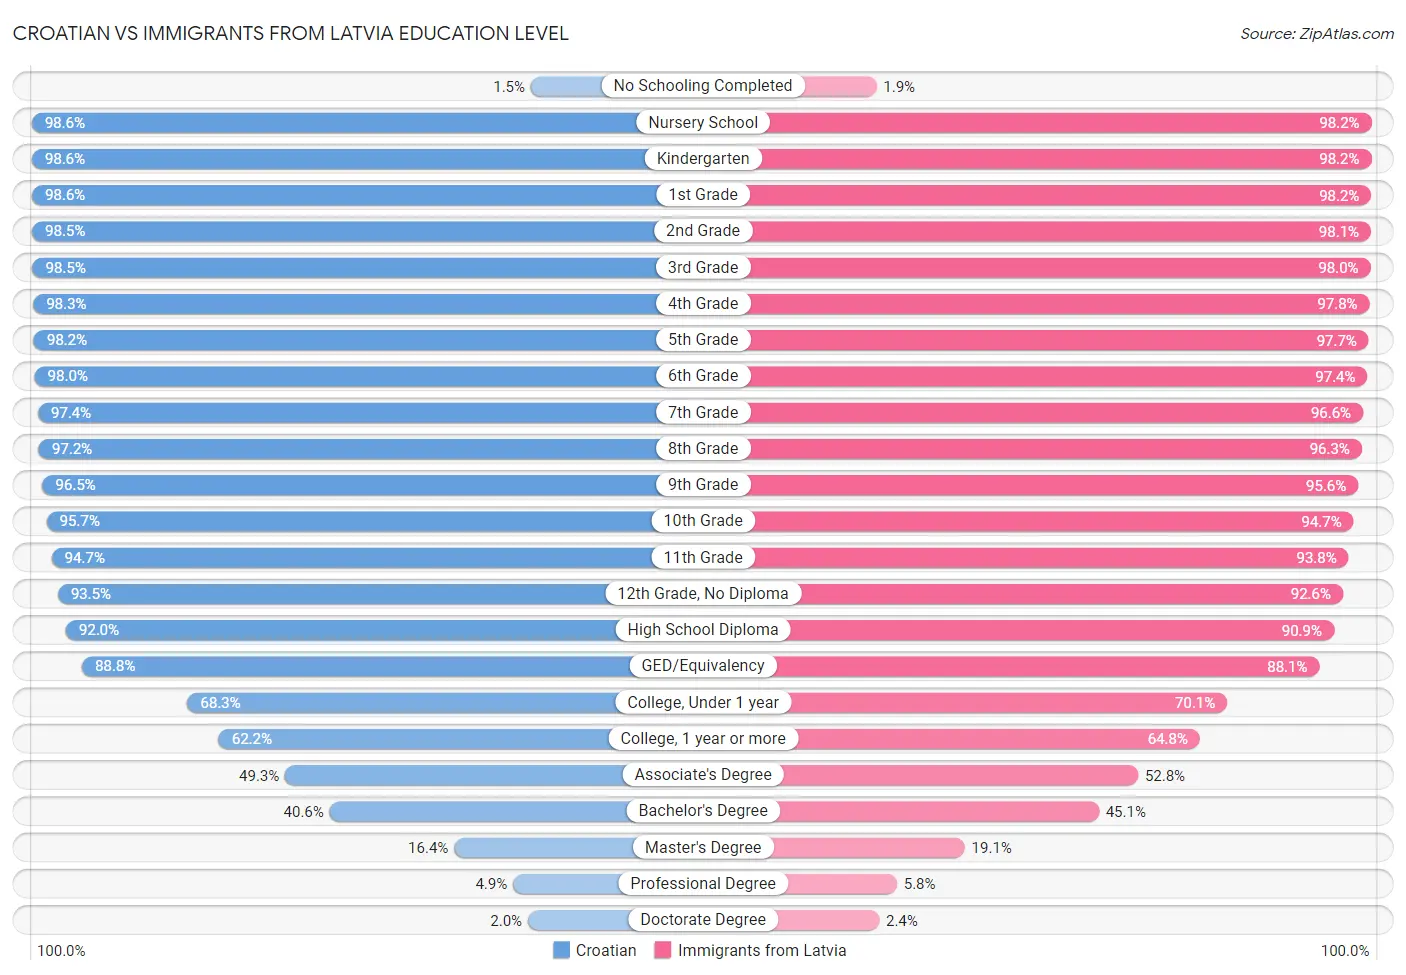 Croatian vs Immigrants from Latvia Education Level